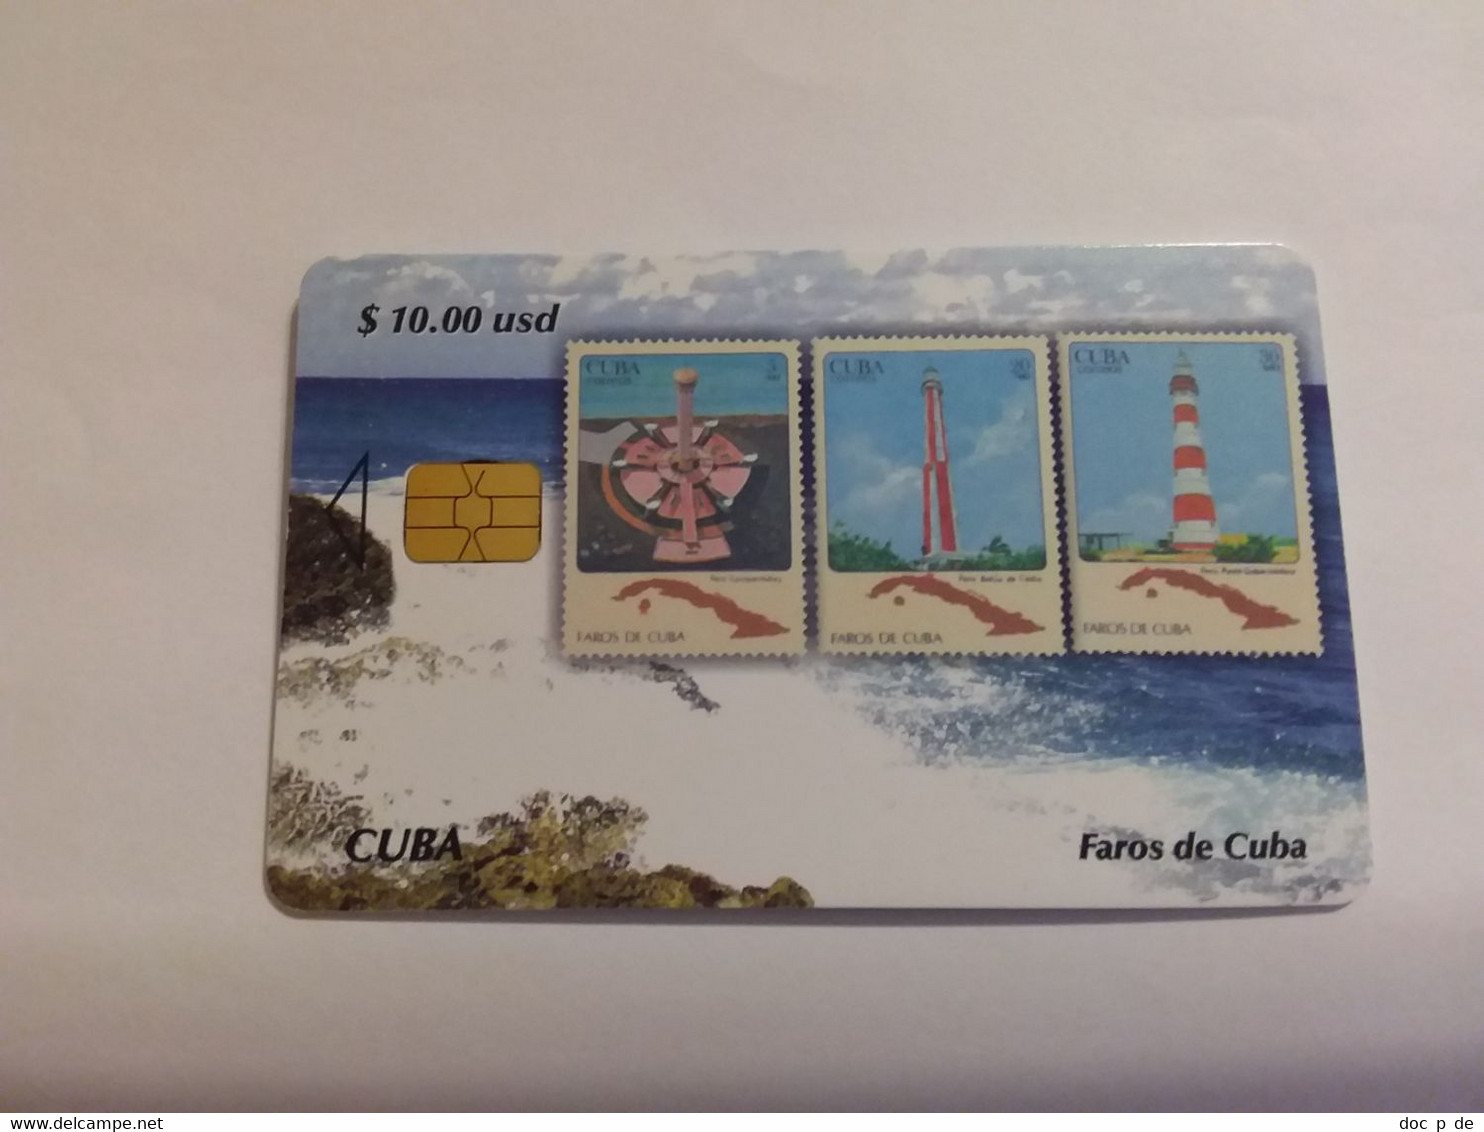 Cuba - Kuba - Faros De Cuba Stamp Timbre Briefmarke  Lighthouse Light House Leuchtturm - Cuba